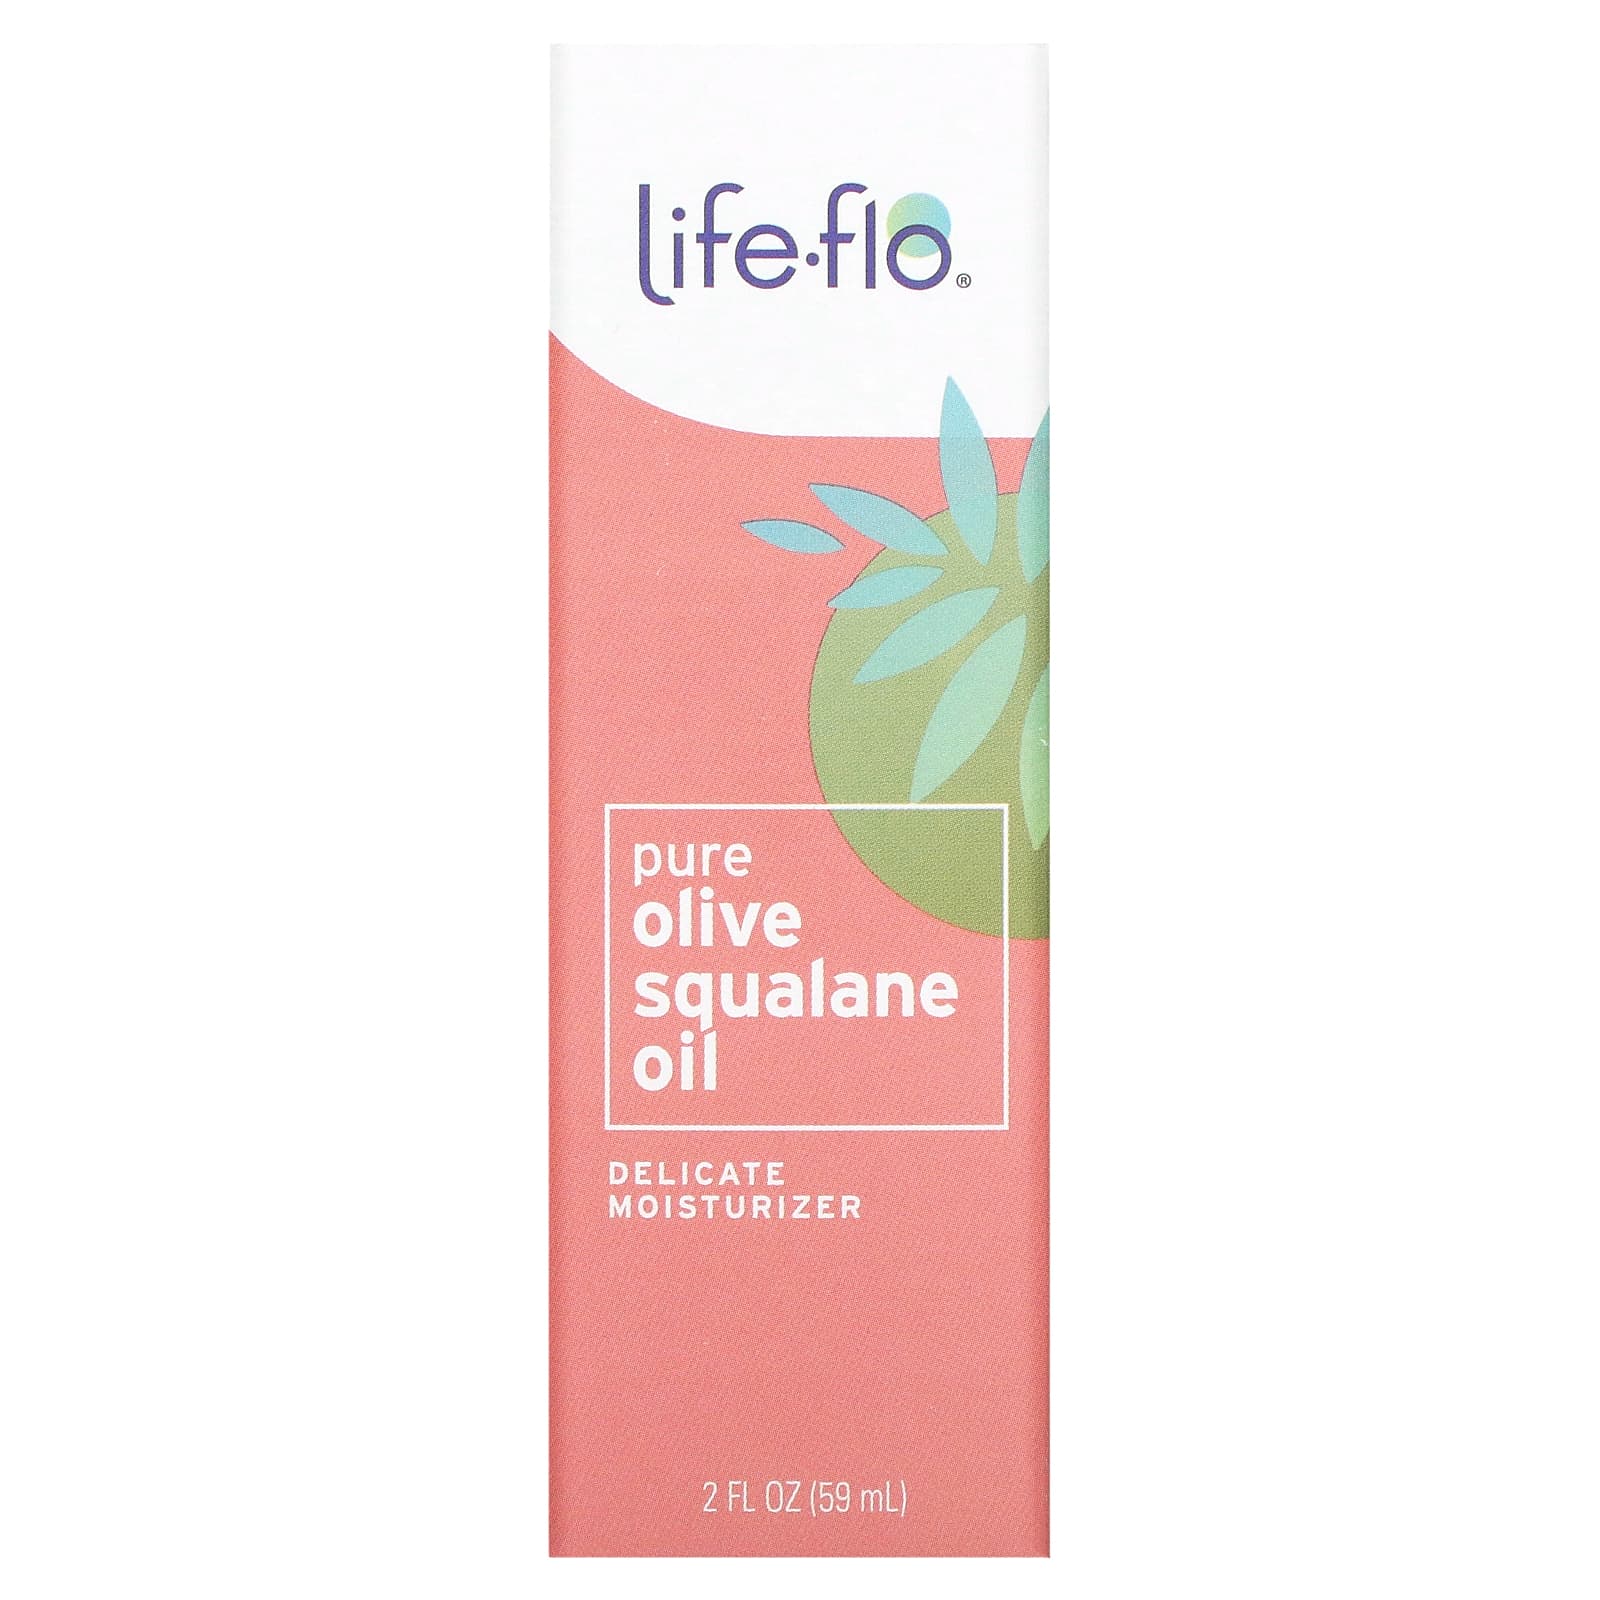 Life-flo Чистый сквален оливкового масла для ухода за кожей 60 мл цена и фото